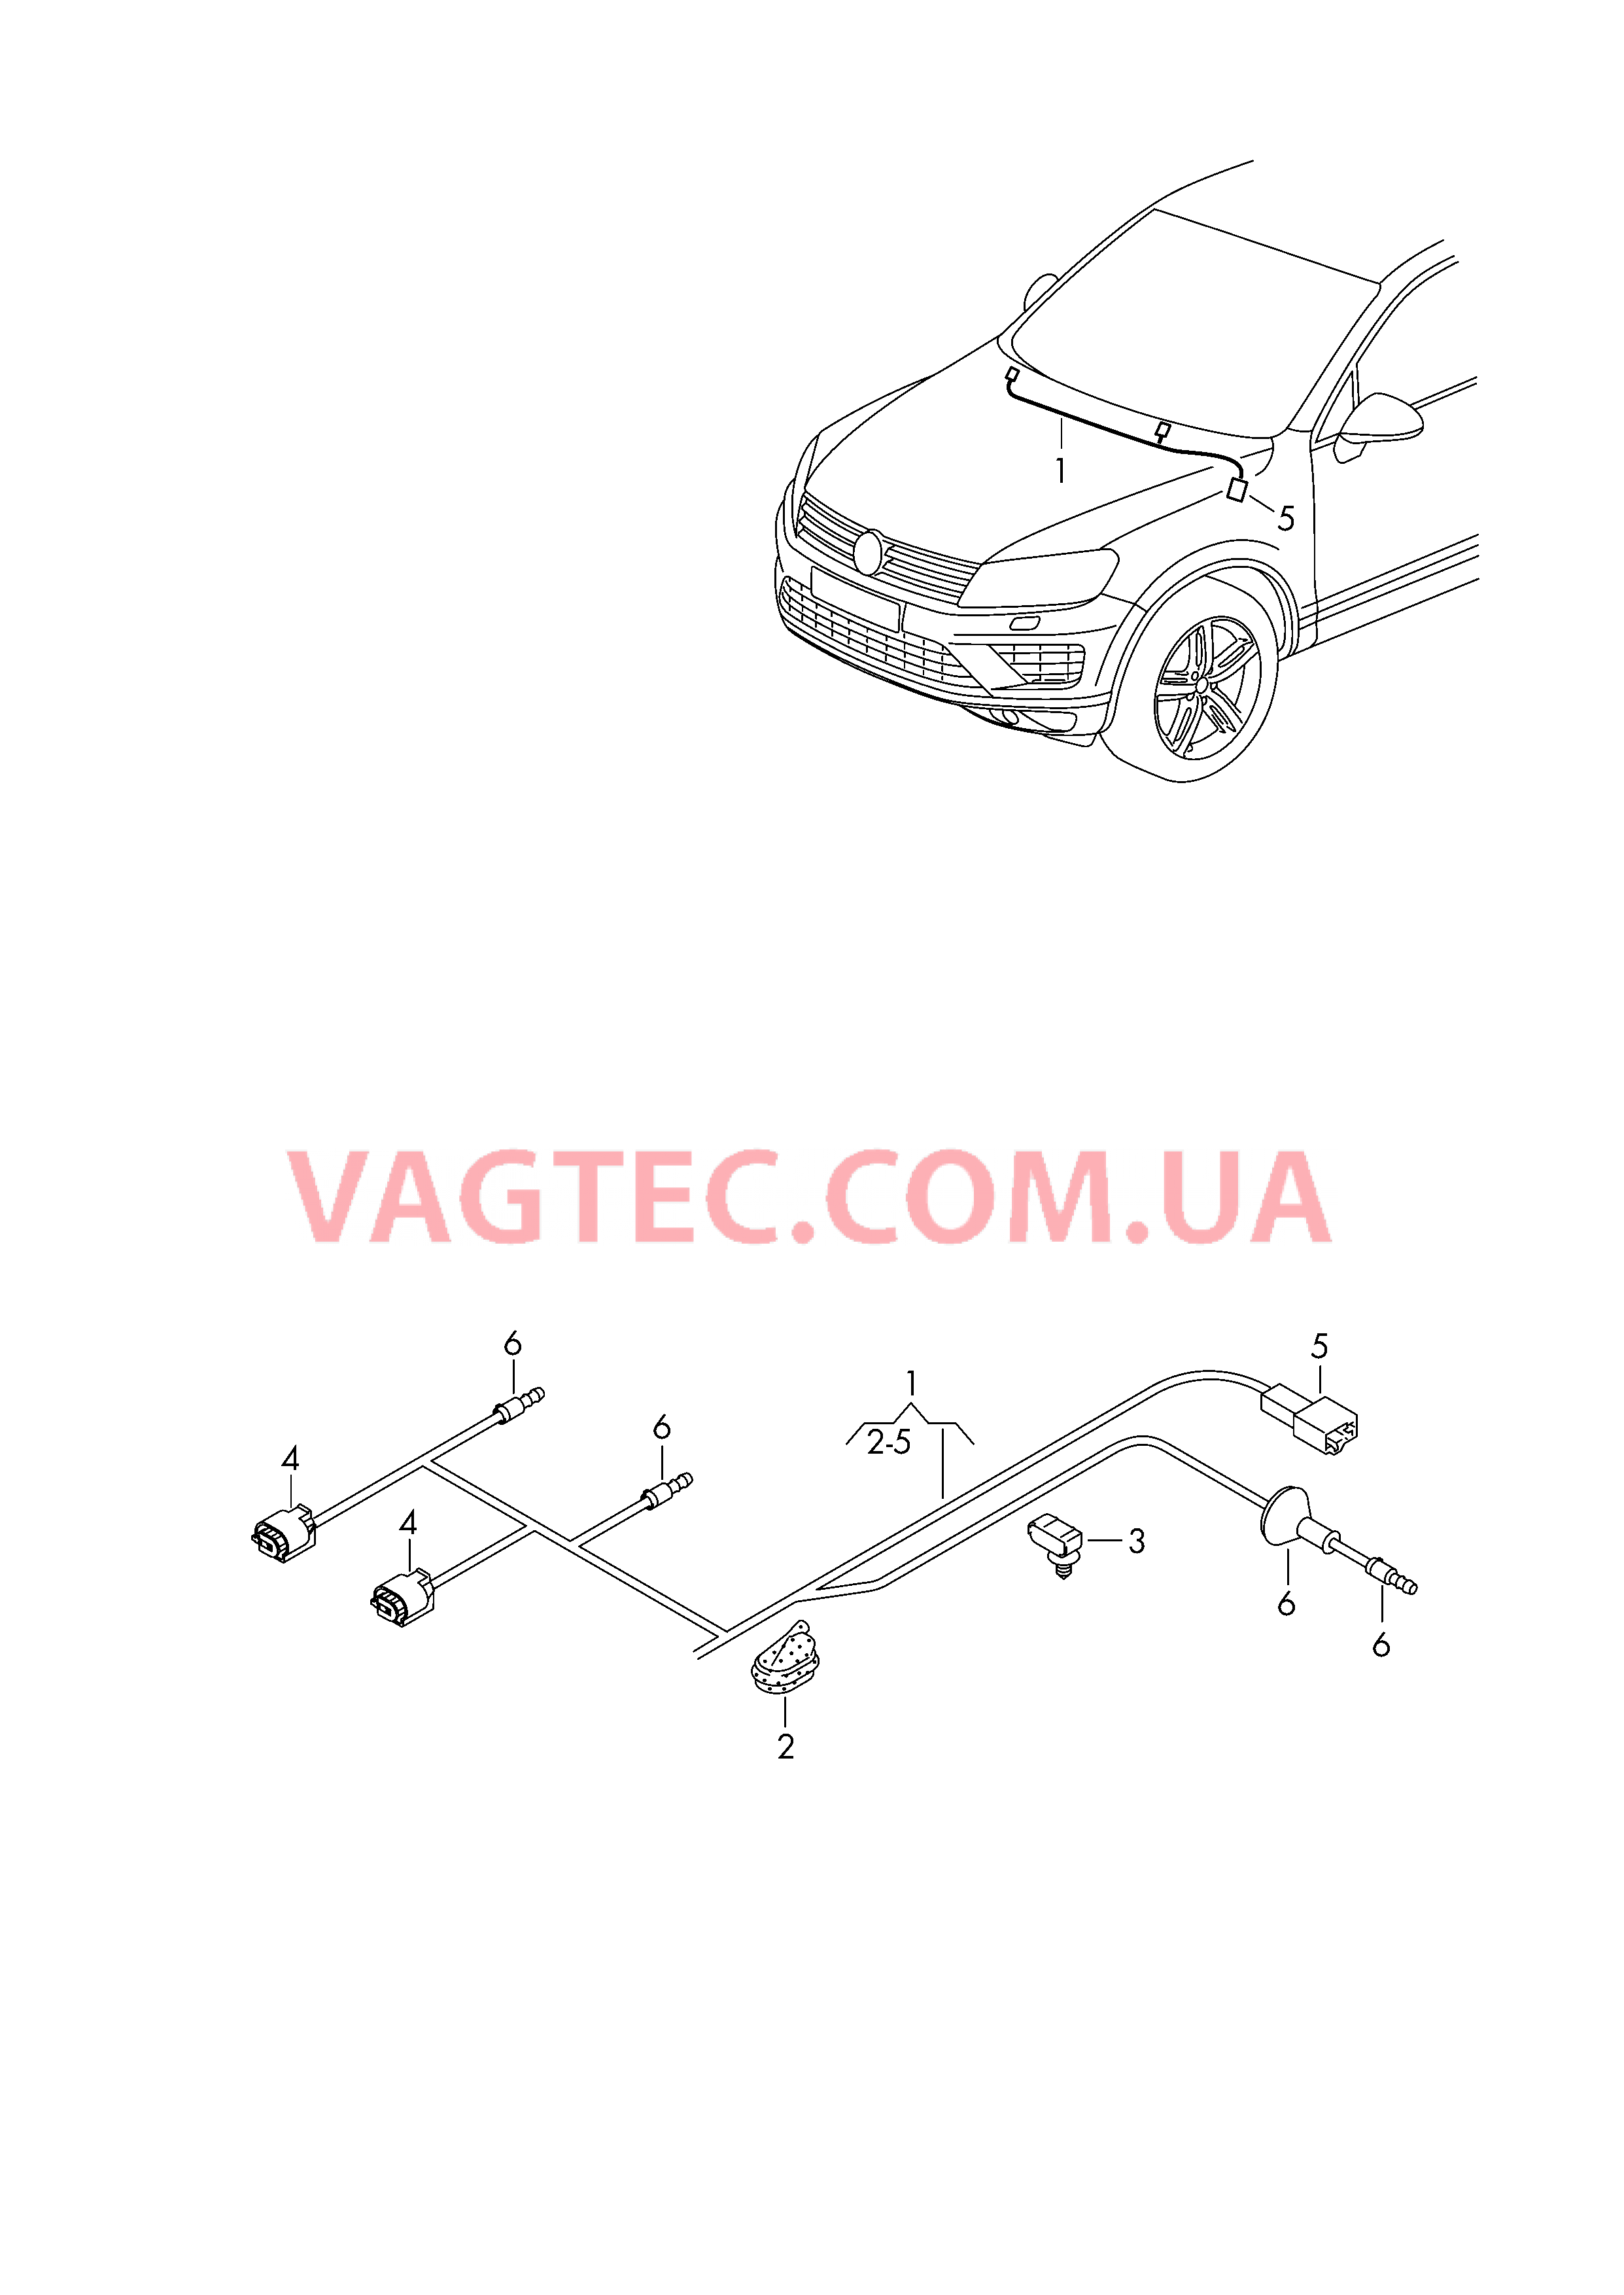 Провода подогрева жиклёров  для VOLKSWAGEN Touareg 2017